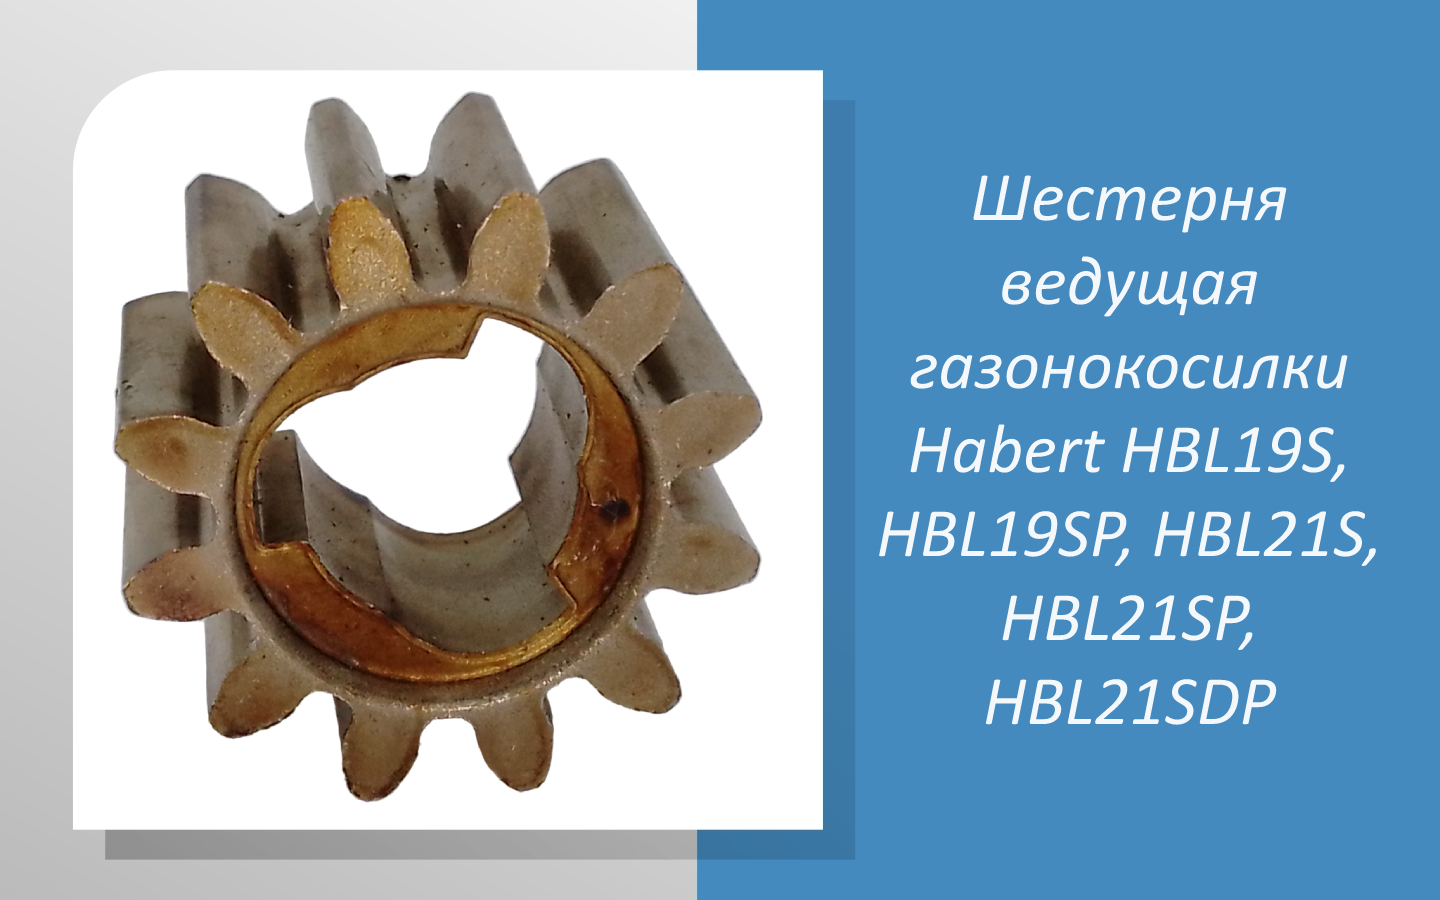 Шестерня ведущая газонокосилки Habert HBL19S, HBL19SP, HBL21S, HBL21SP, HBL21SDP